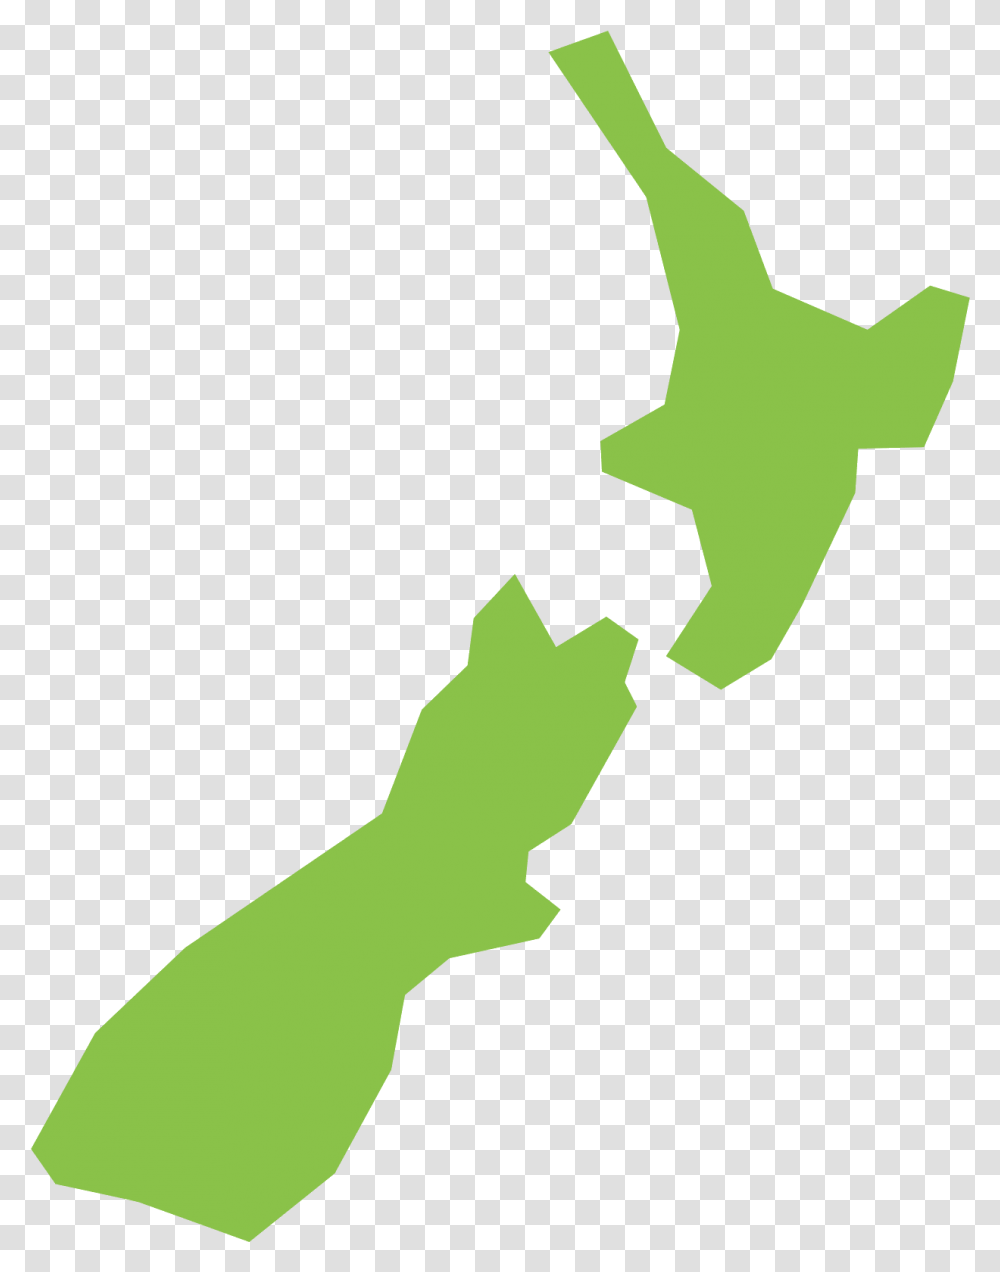 New New Zealand Map Vector, Symbol, Star Symbol, Person, Human Transparent Png